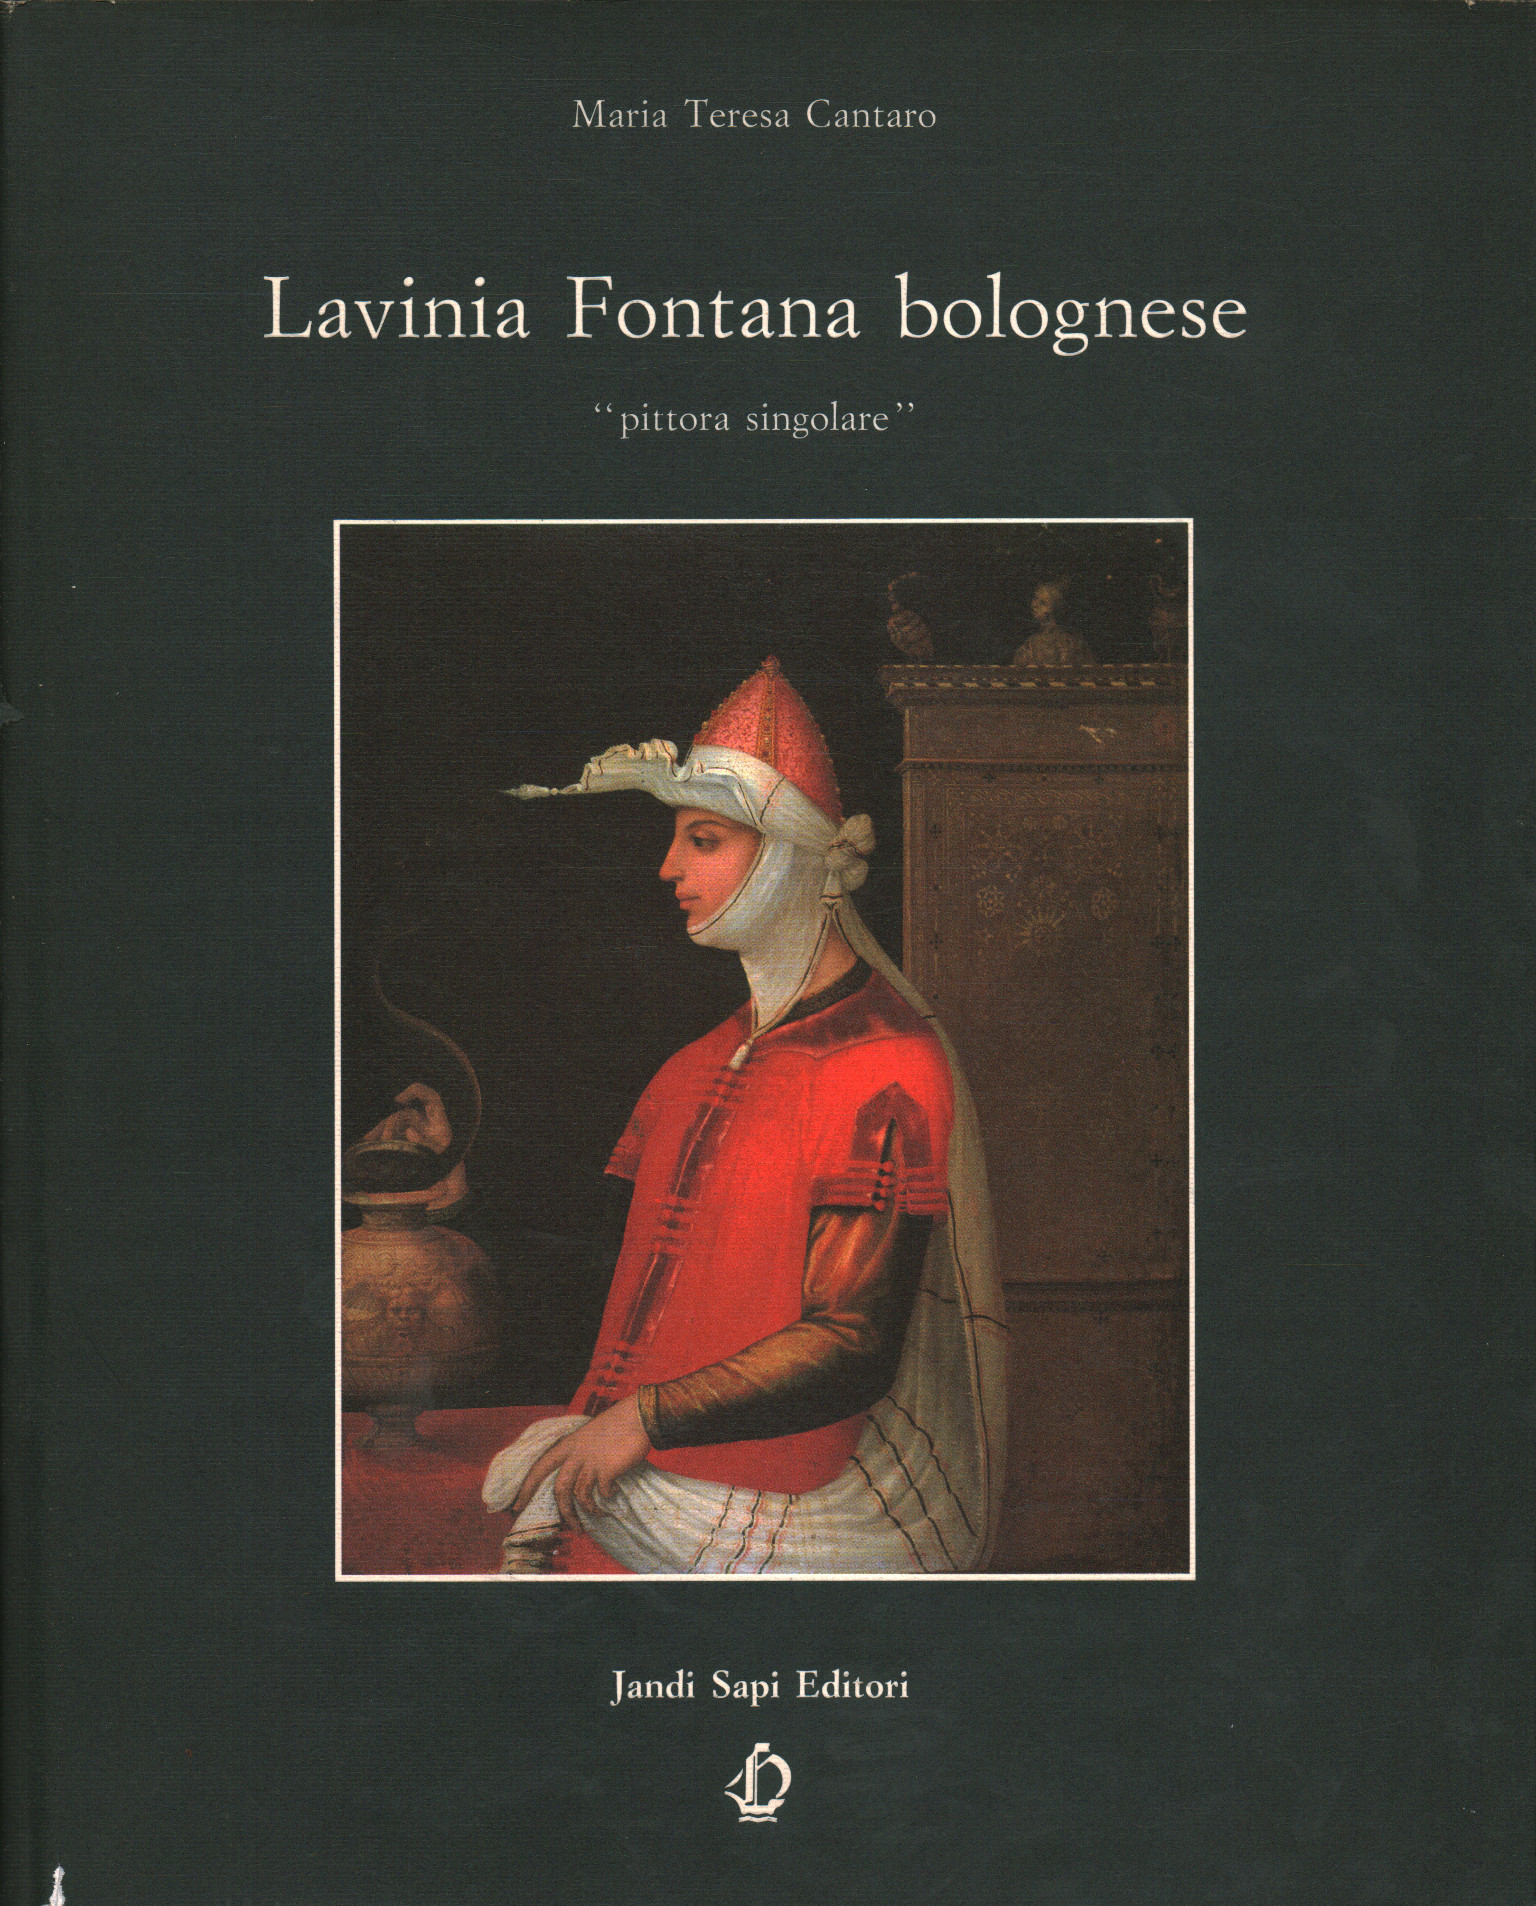 Lavinia Fontana aus Bologna